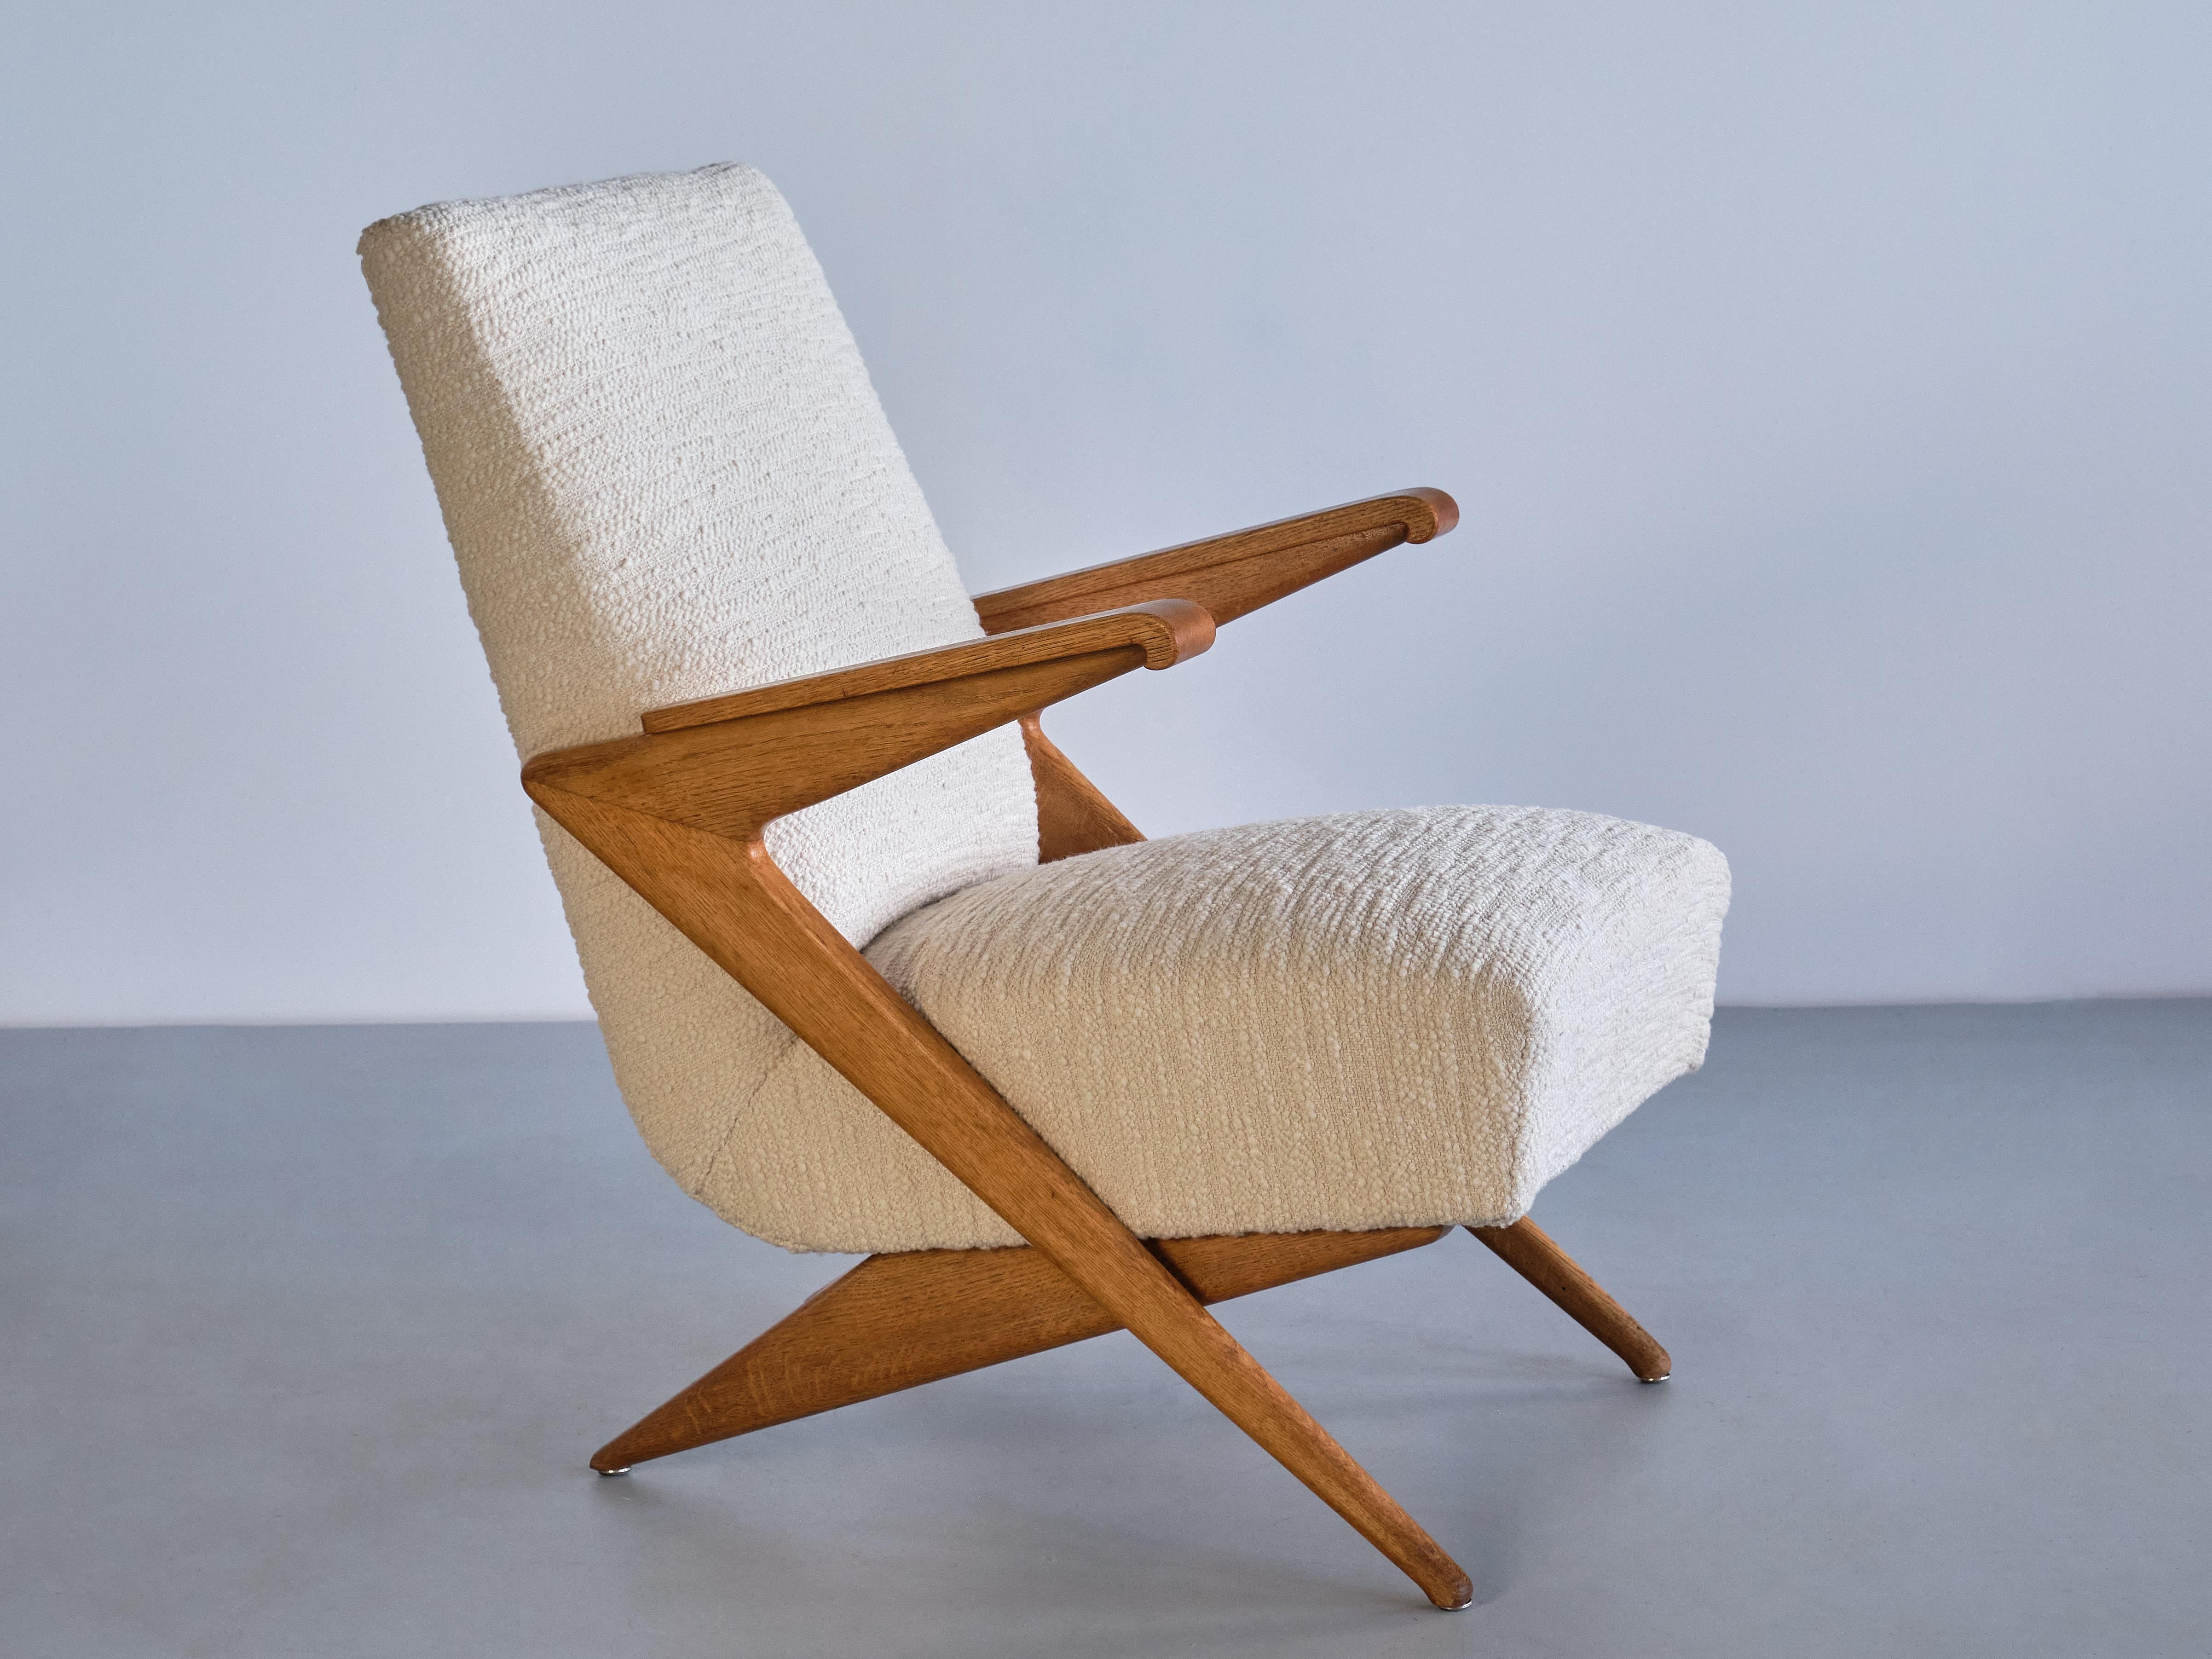 Dieser seltene Sessel wurde in den späten 1950er Jahren in Frankreich hergestellt. Das Design dieses besonderen Modells wird dem Designer Gustave Gautier zugeschrieben.

Der Stuhl zeichnet sich durch die scharfen Winkel, geometrischen Linien und die